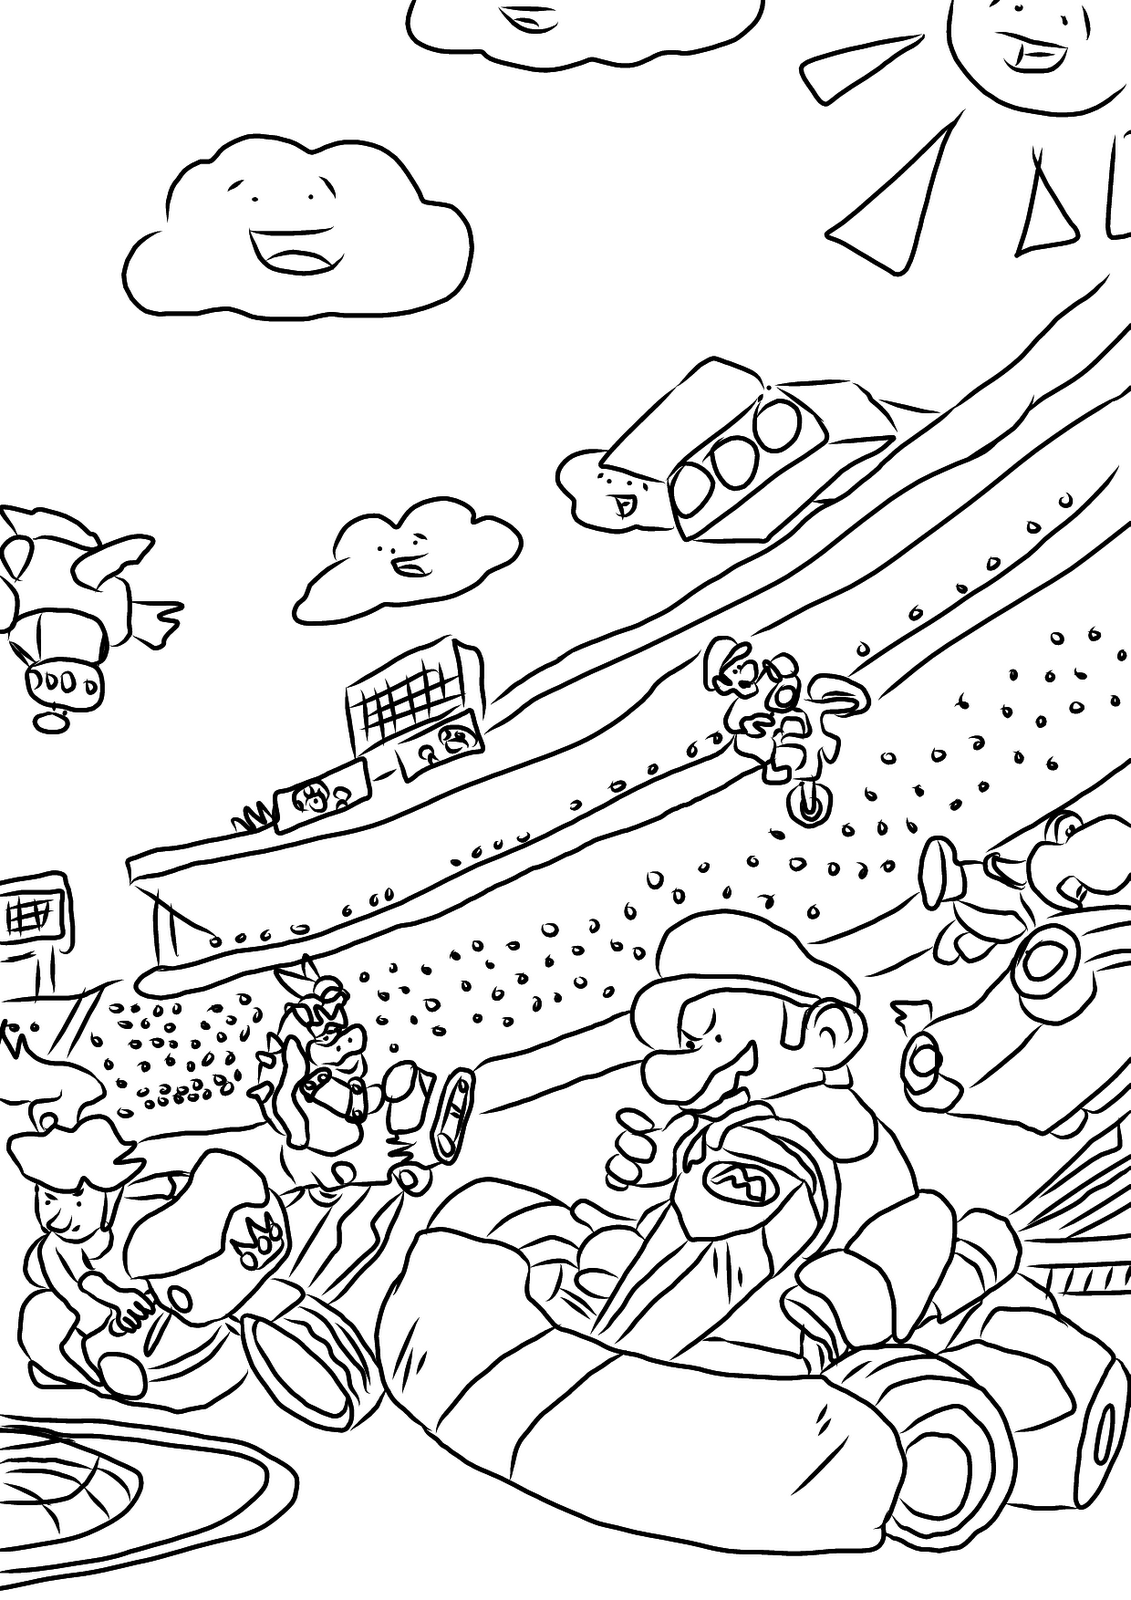 Coloriage Mario Kart gratuit à imprimer